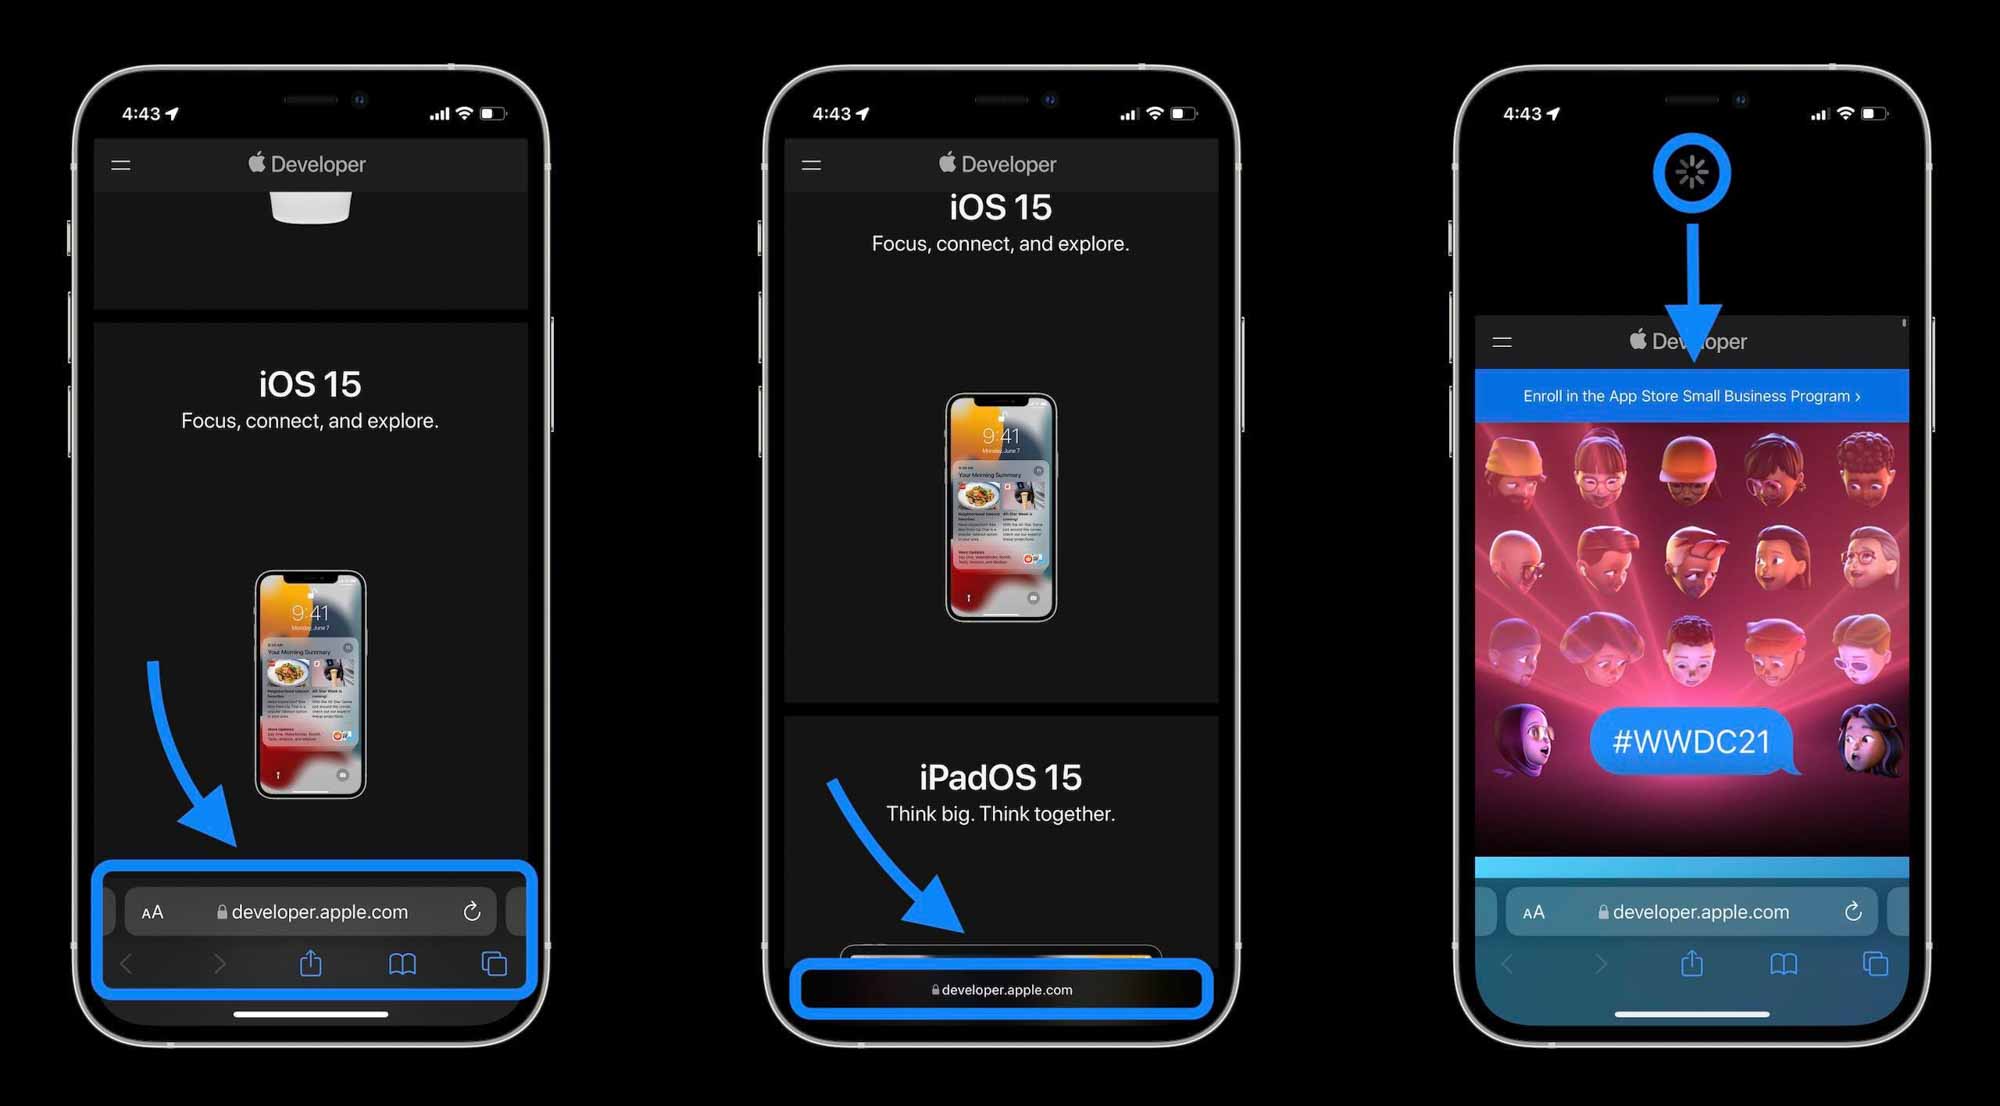 Как Safari в iOS 15 работает с макетом и навигацией - коснитесь панели поиска или проведите пальцем вверх по панели вкладок, затем коснитесь значка +, чтобы открыть новый